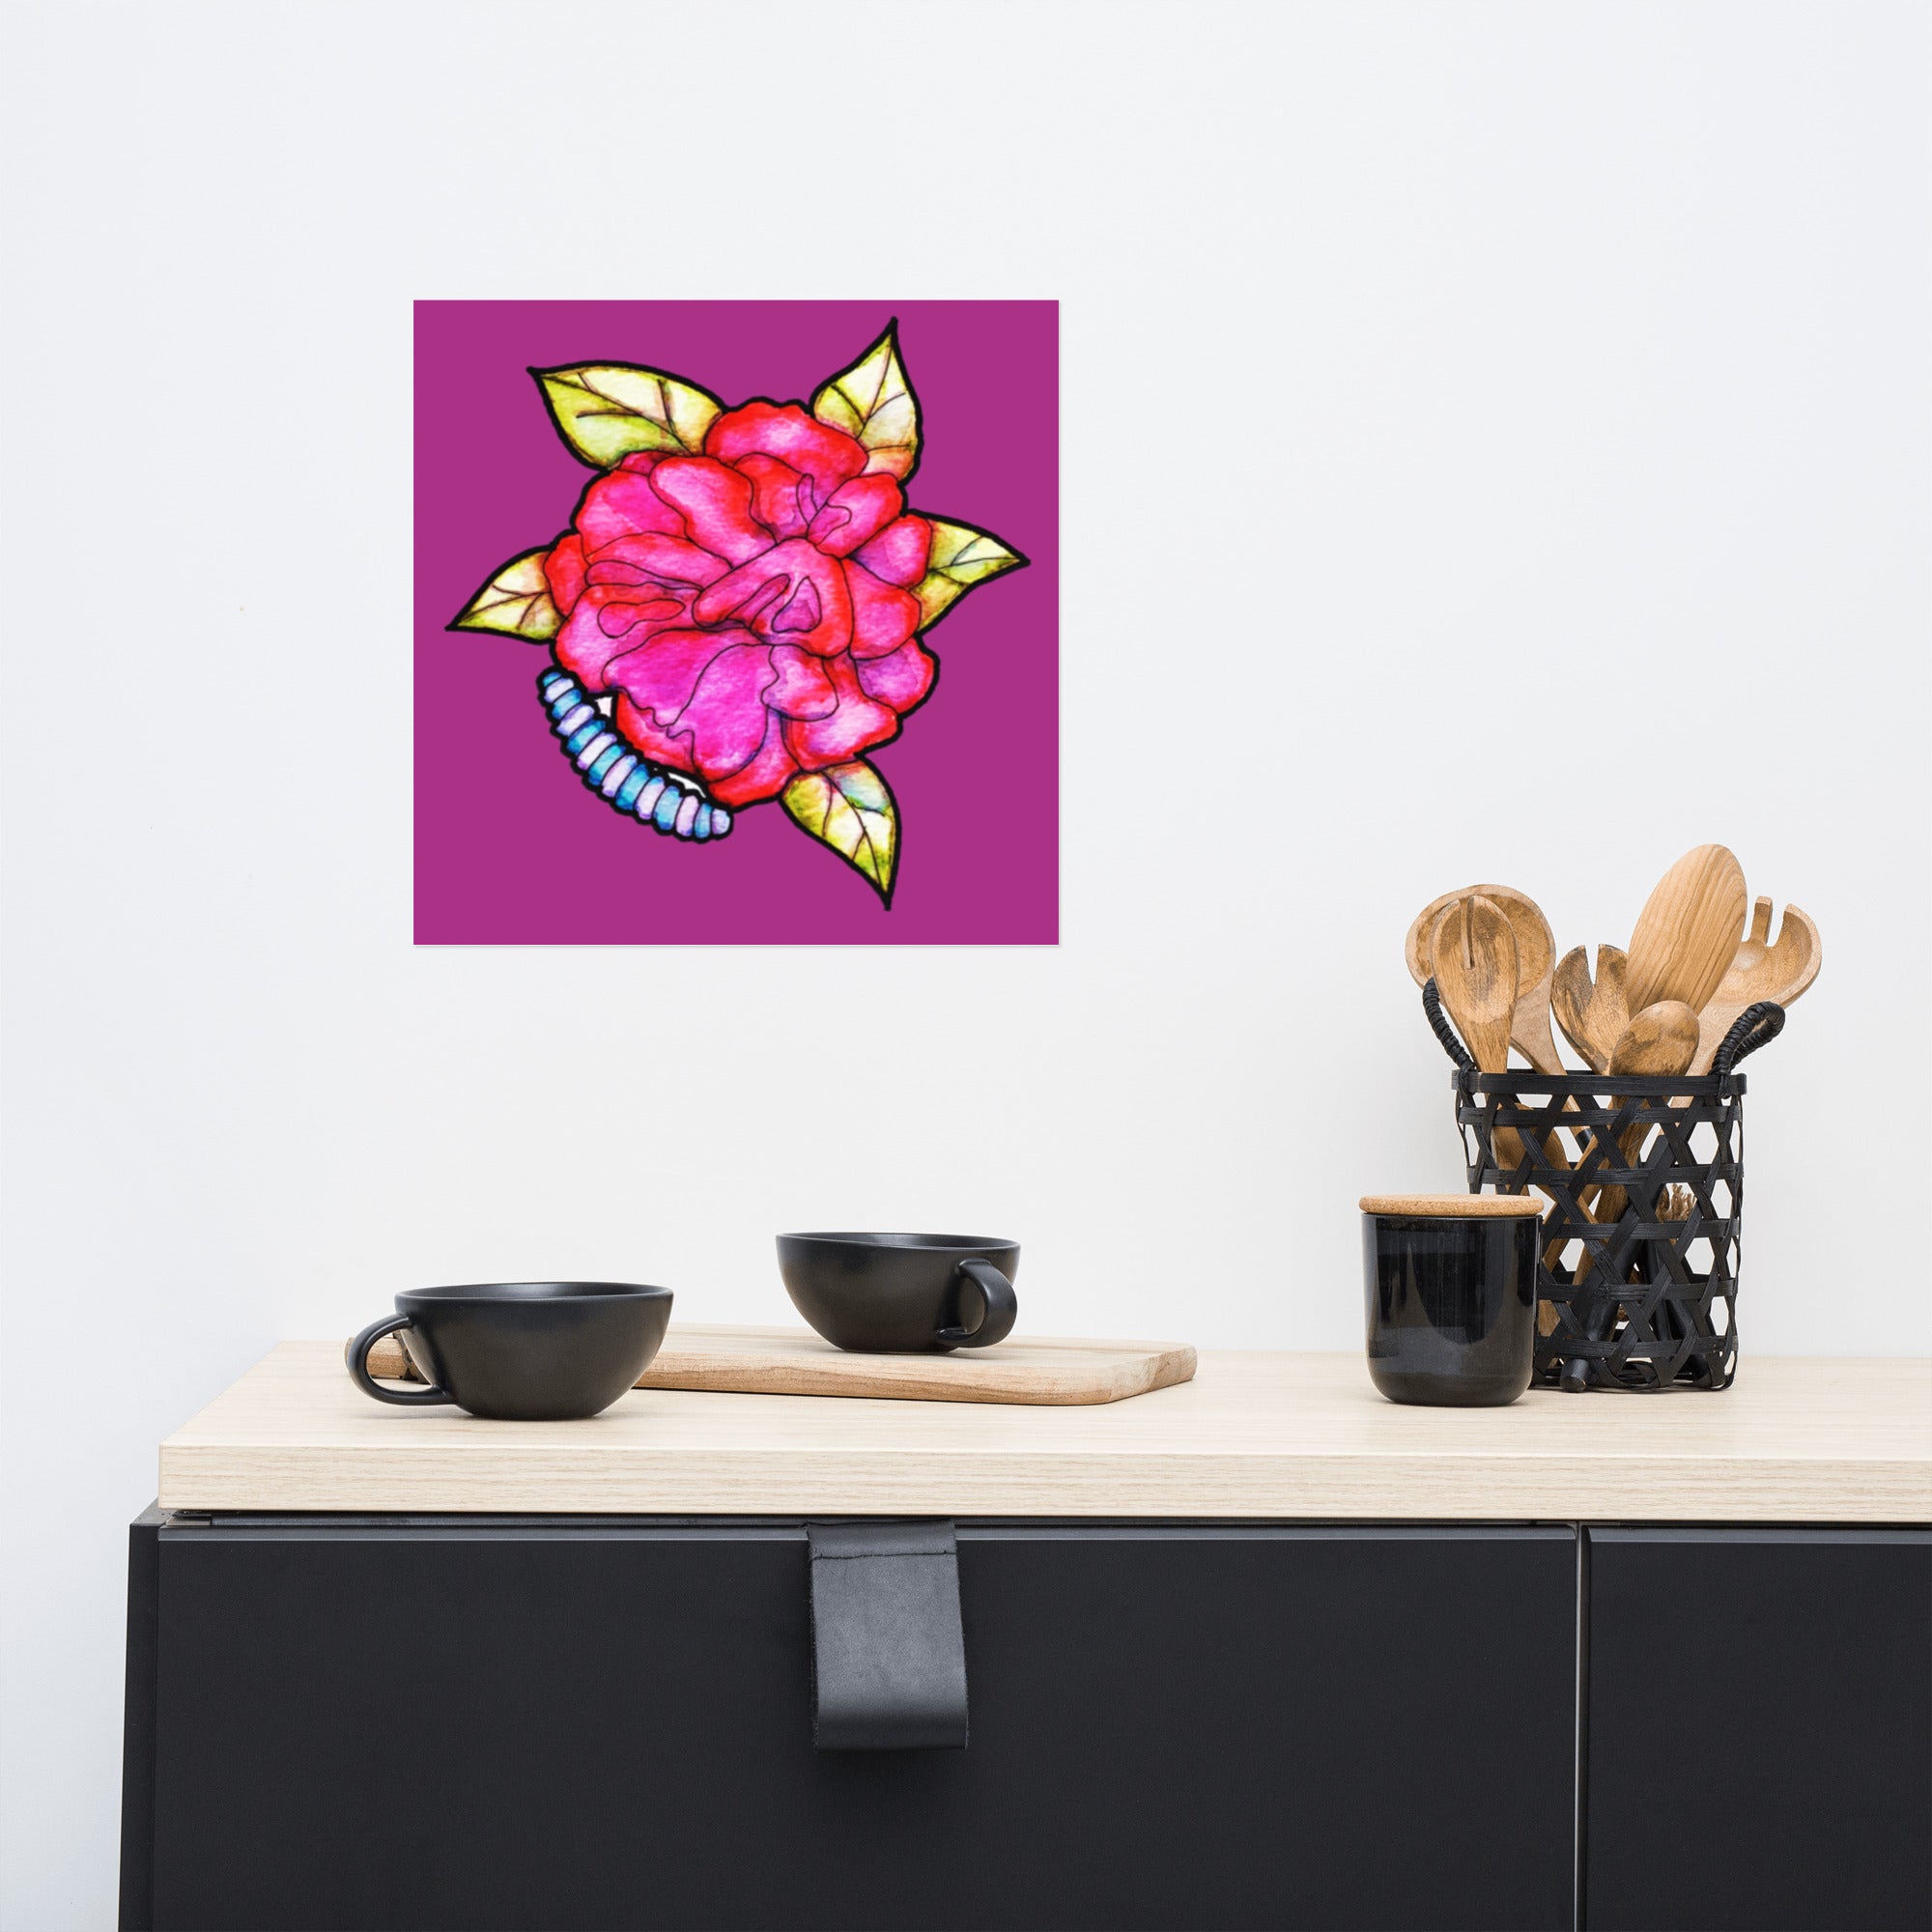 Pink Mum Flower Poster Unframed - Art Love Decor